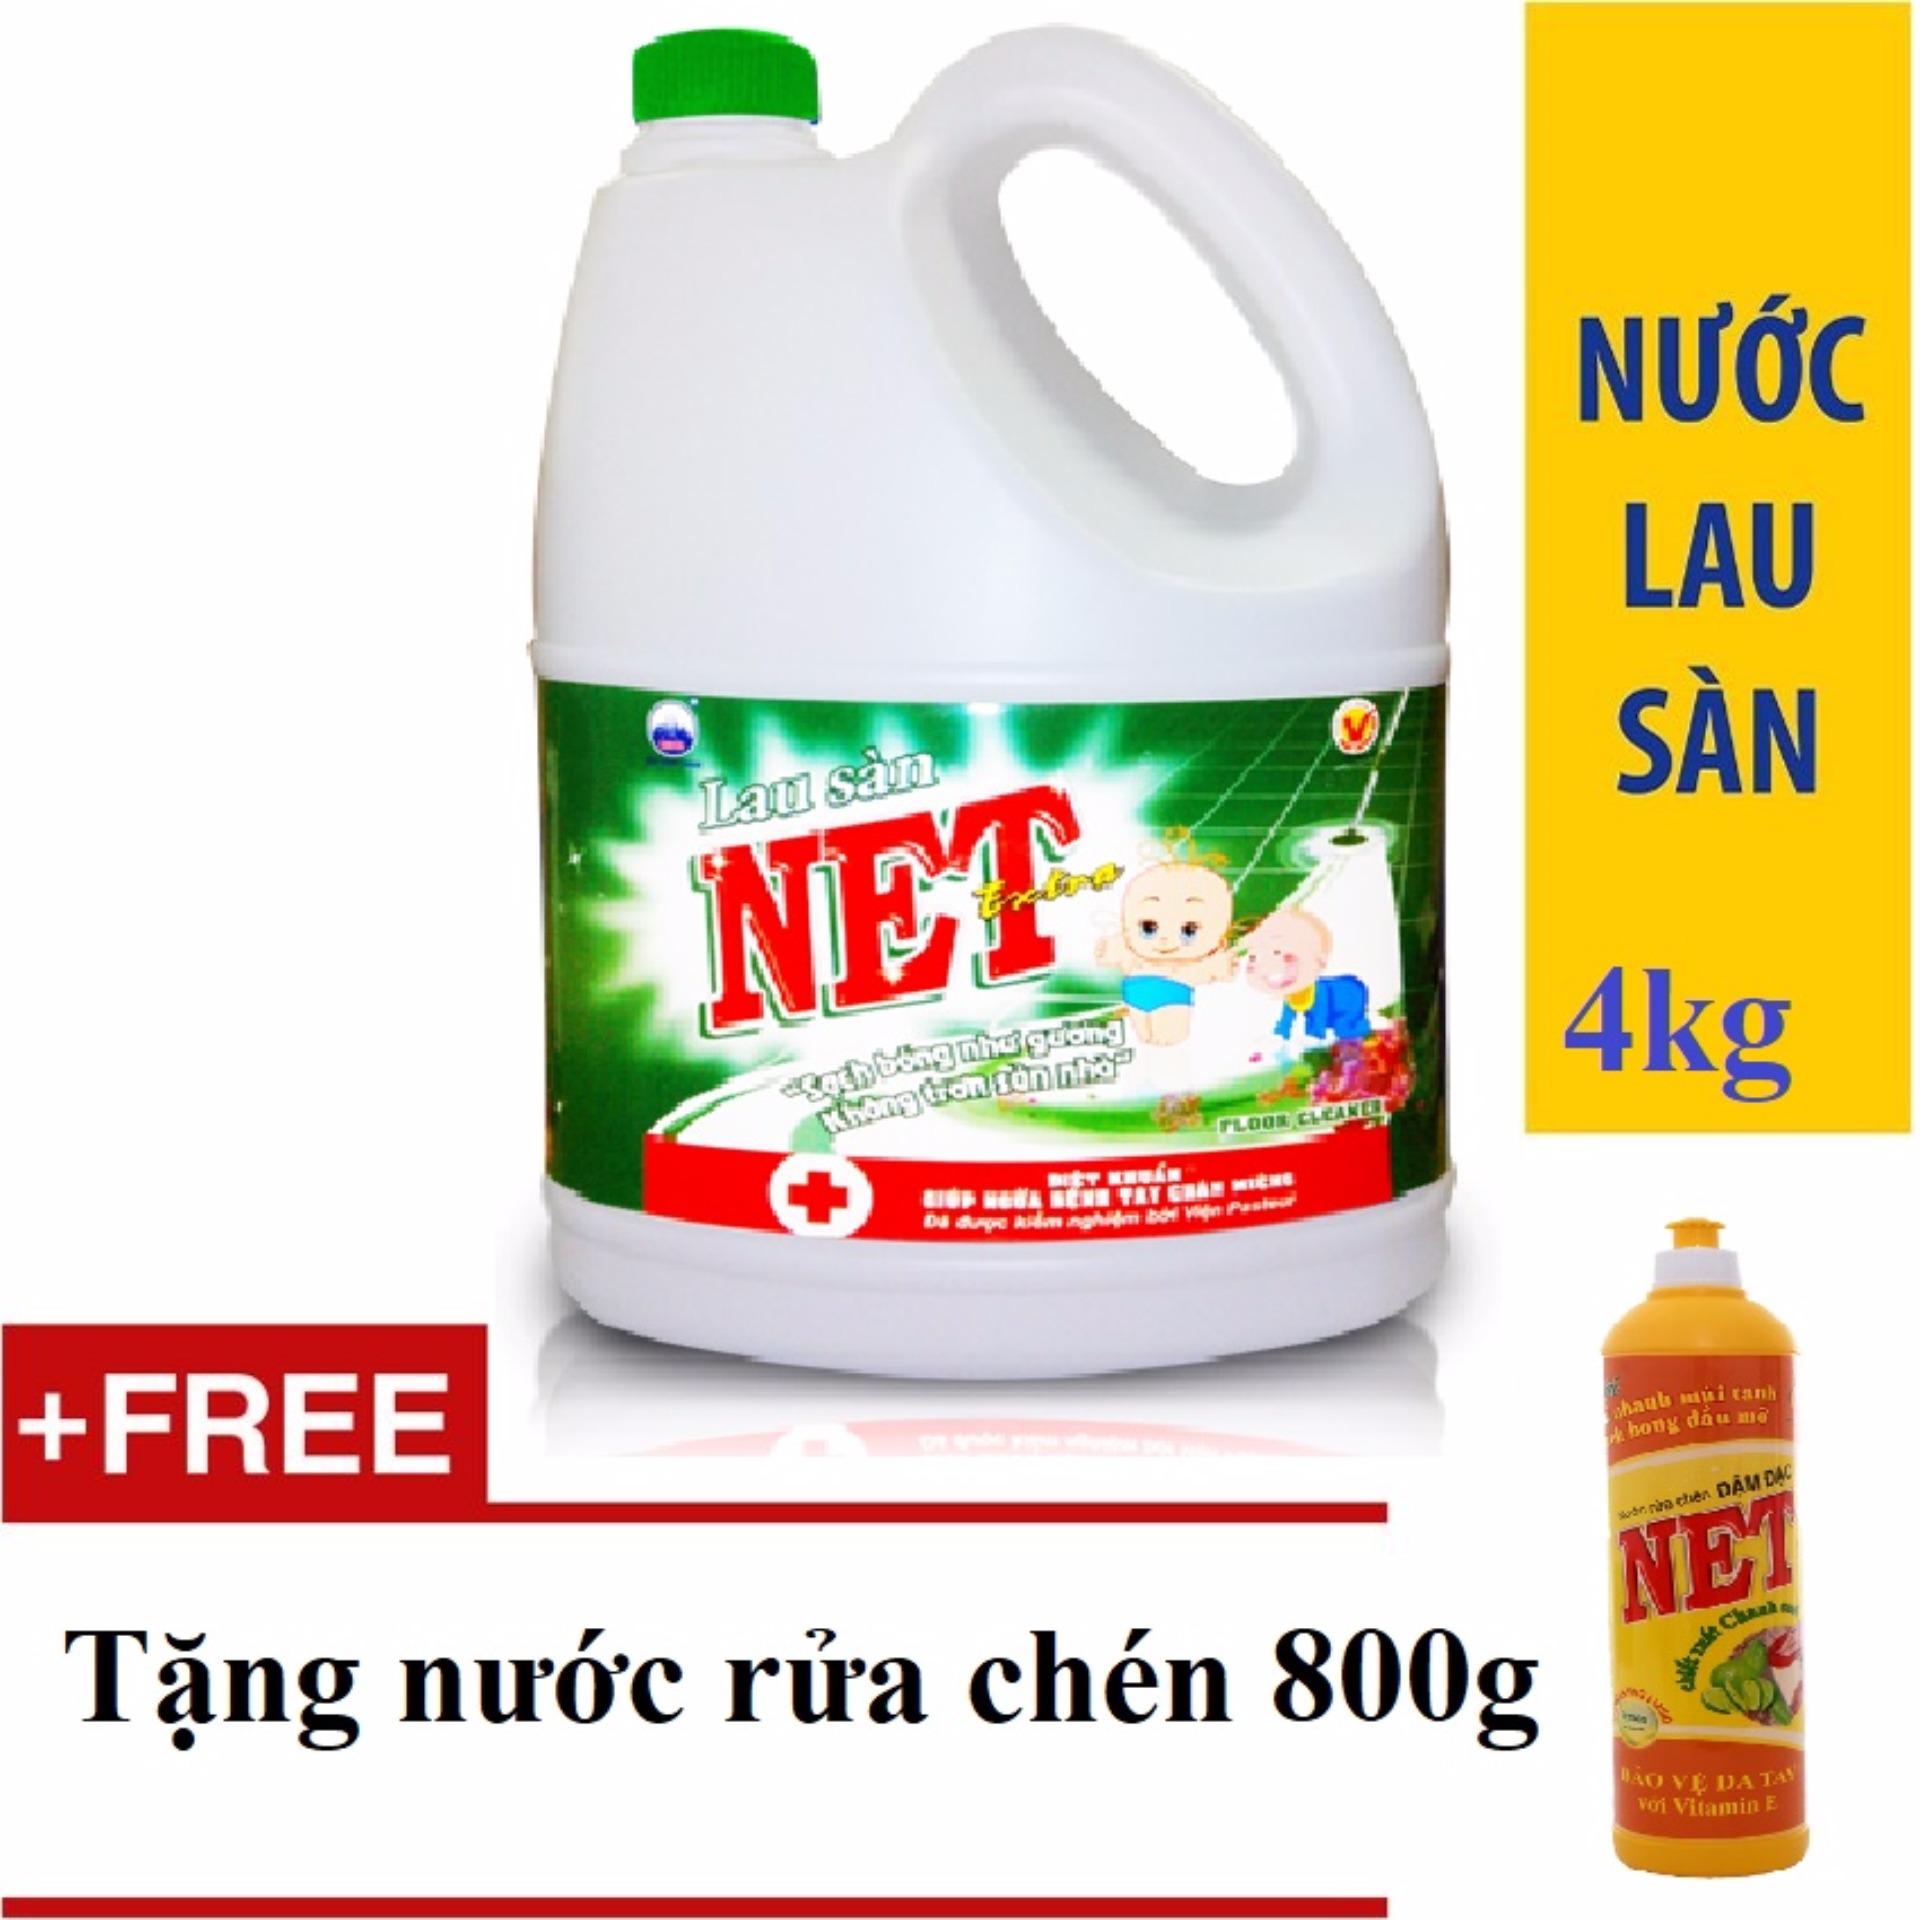 Nước lau sàn NET Extra/Bạc Hà Diệt khuẩn can 4kg tặng nước rửa chén Net 800g đậm đặc